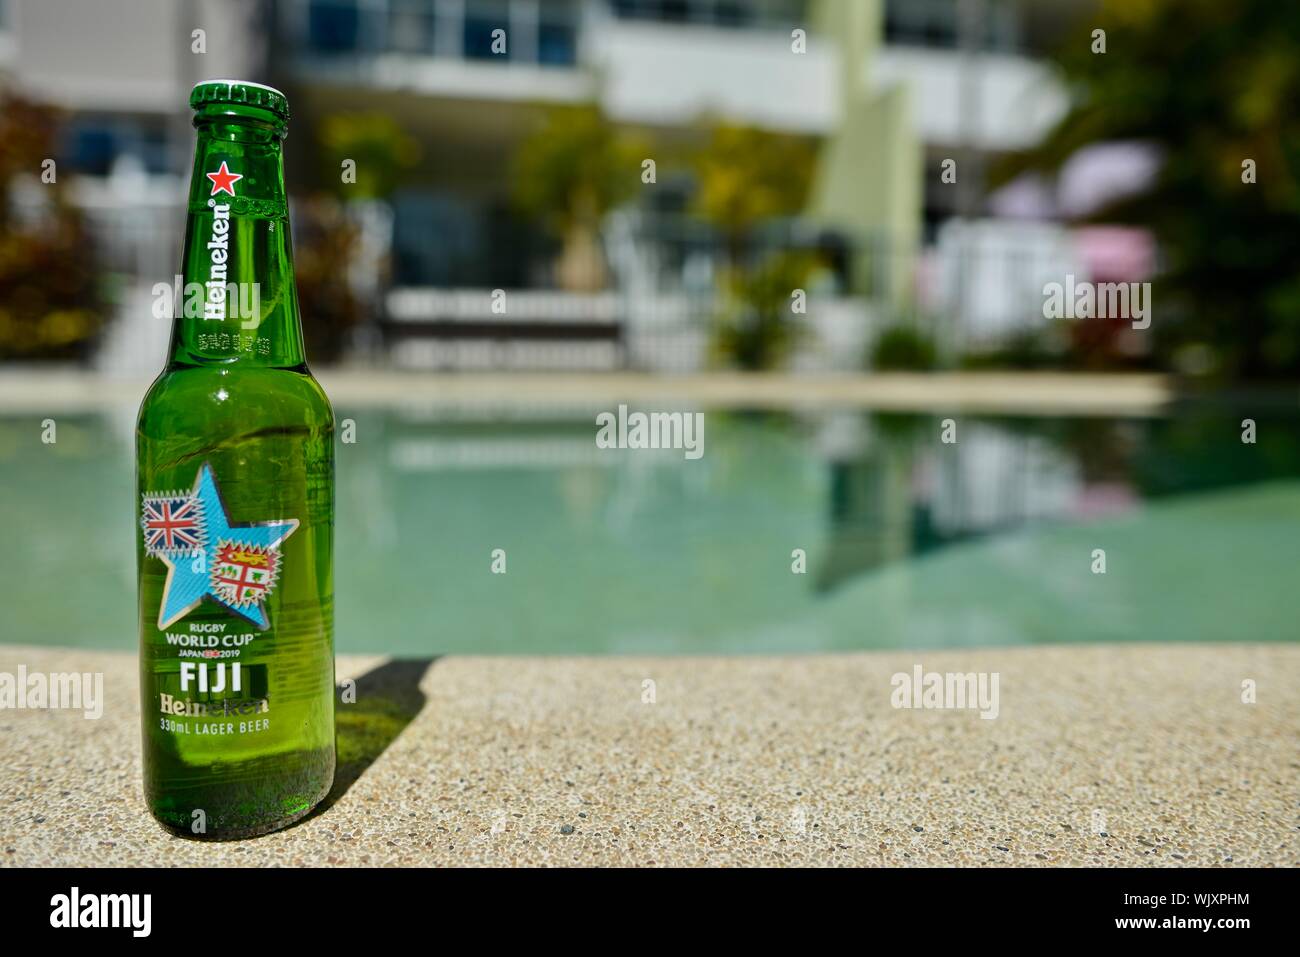 Fiji, Heineken 2019 Japan Rugby world cup beer bottle Stock Photo